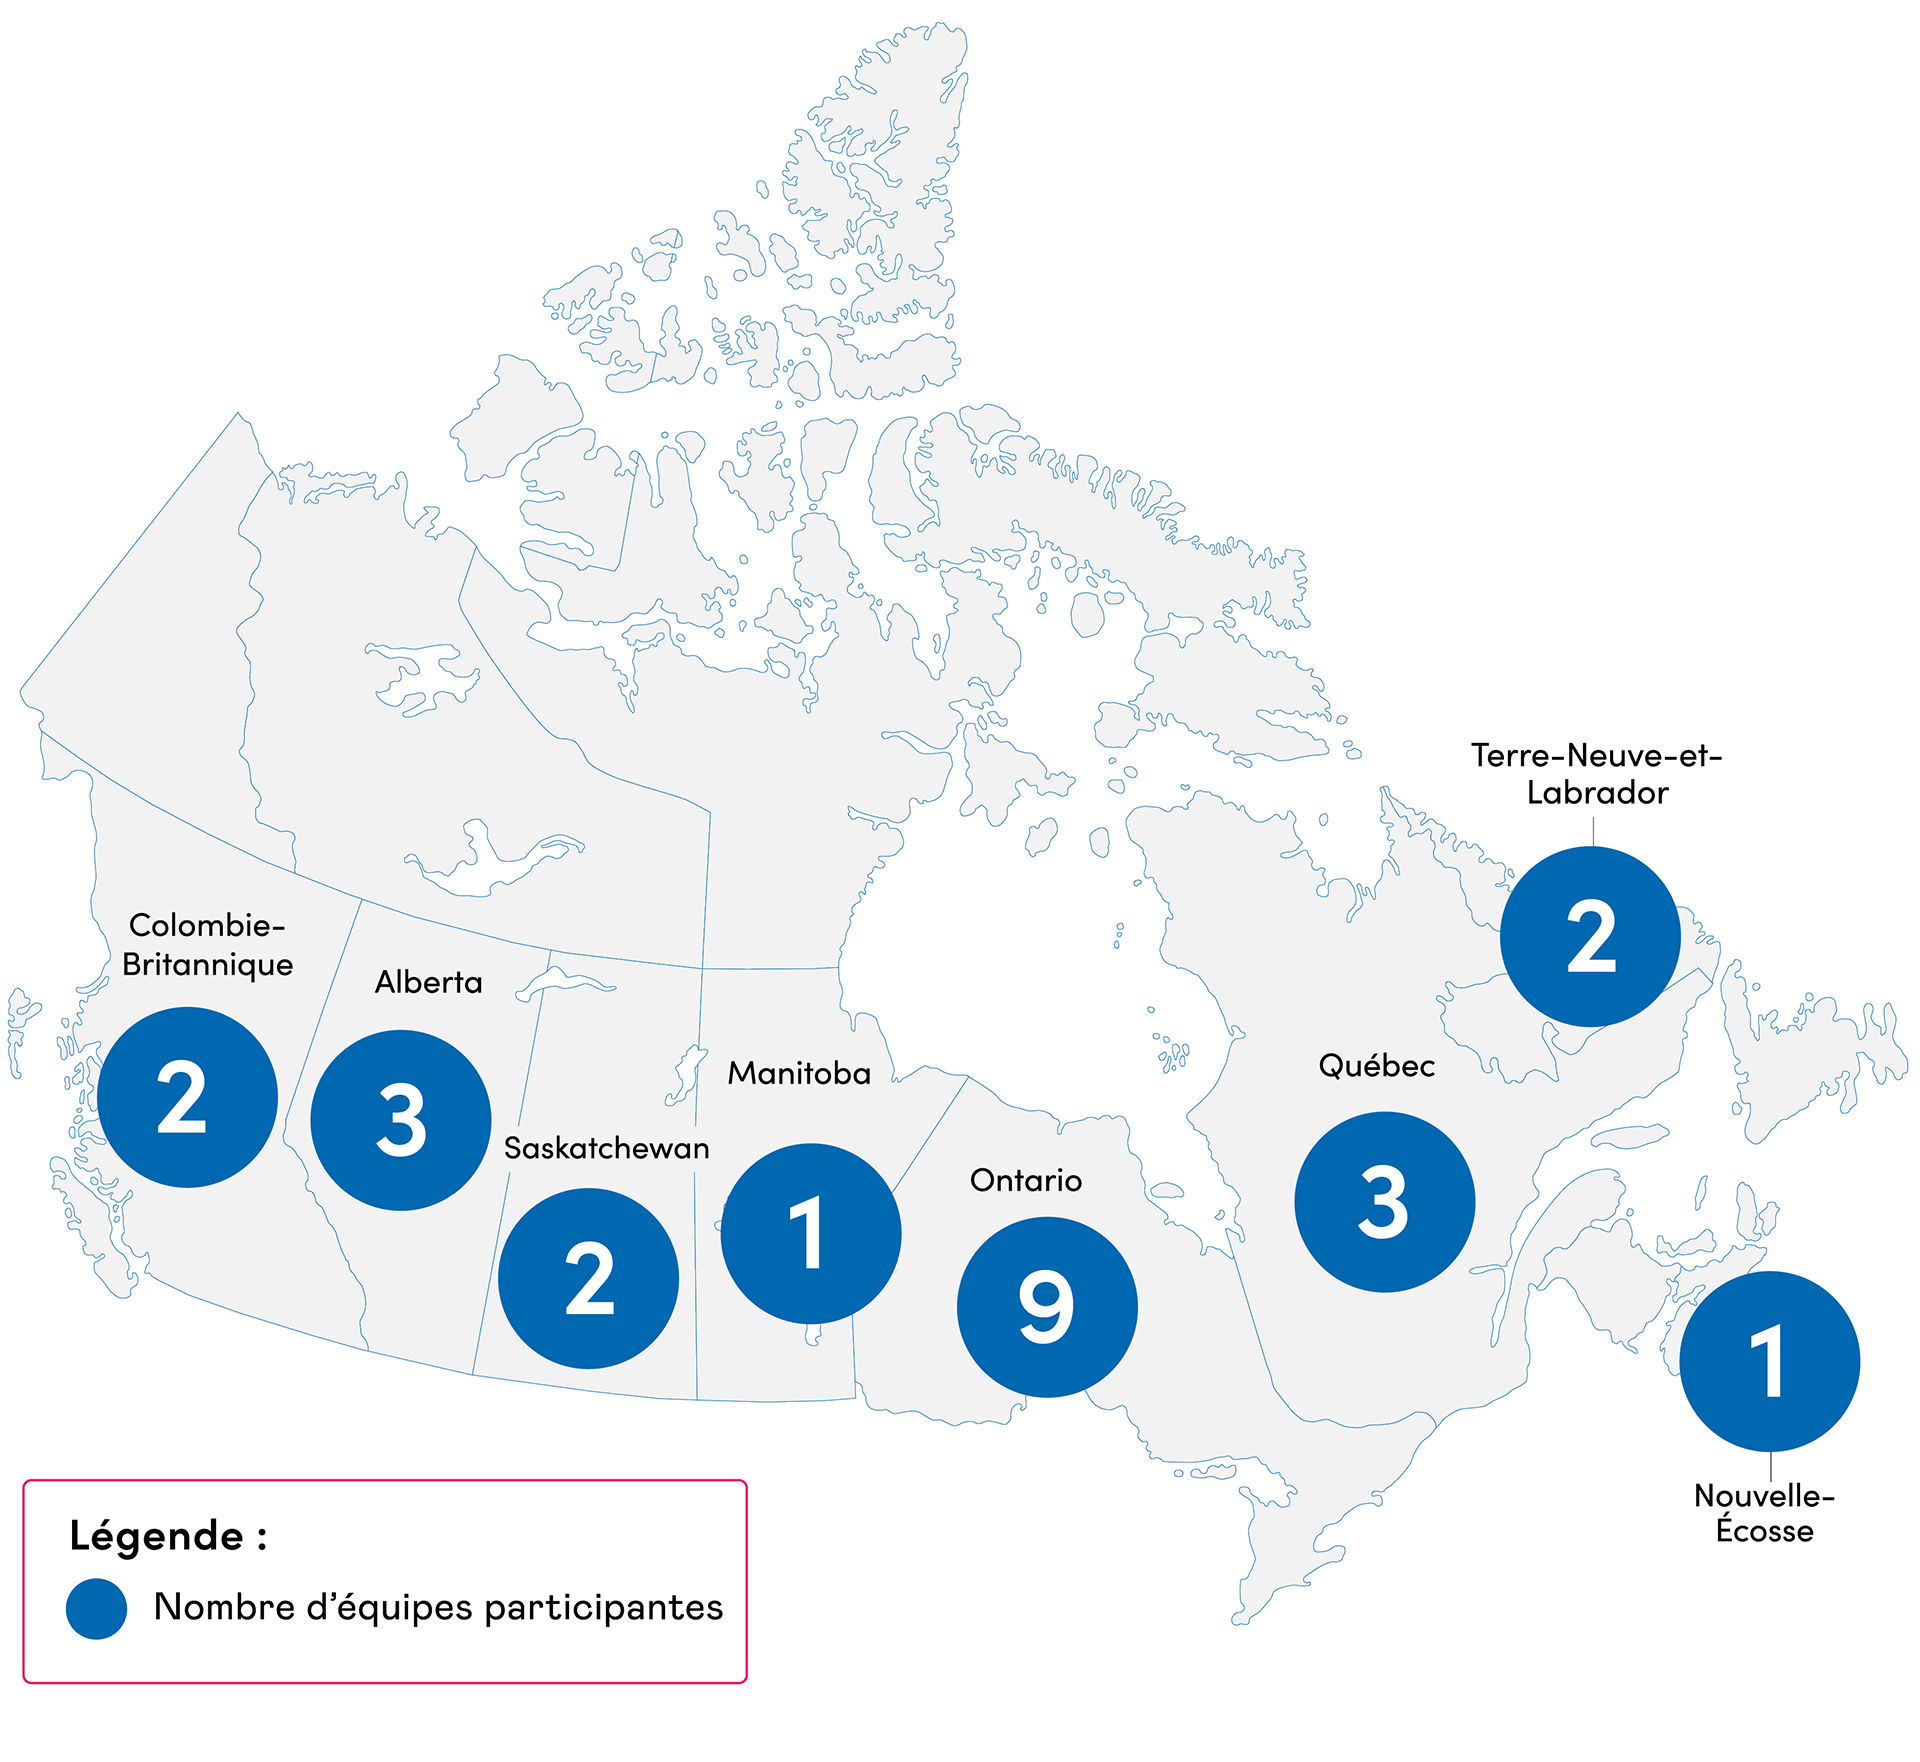 Carte du Canada de couleur grise indiquant pour chaque province le nombre d’équipes participant au projet collaboratif Améliorer l’équité dans l’accès aux soins palliatifs.